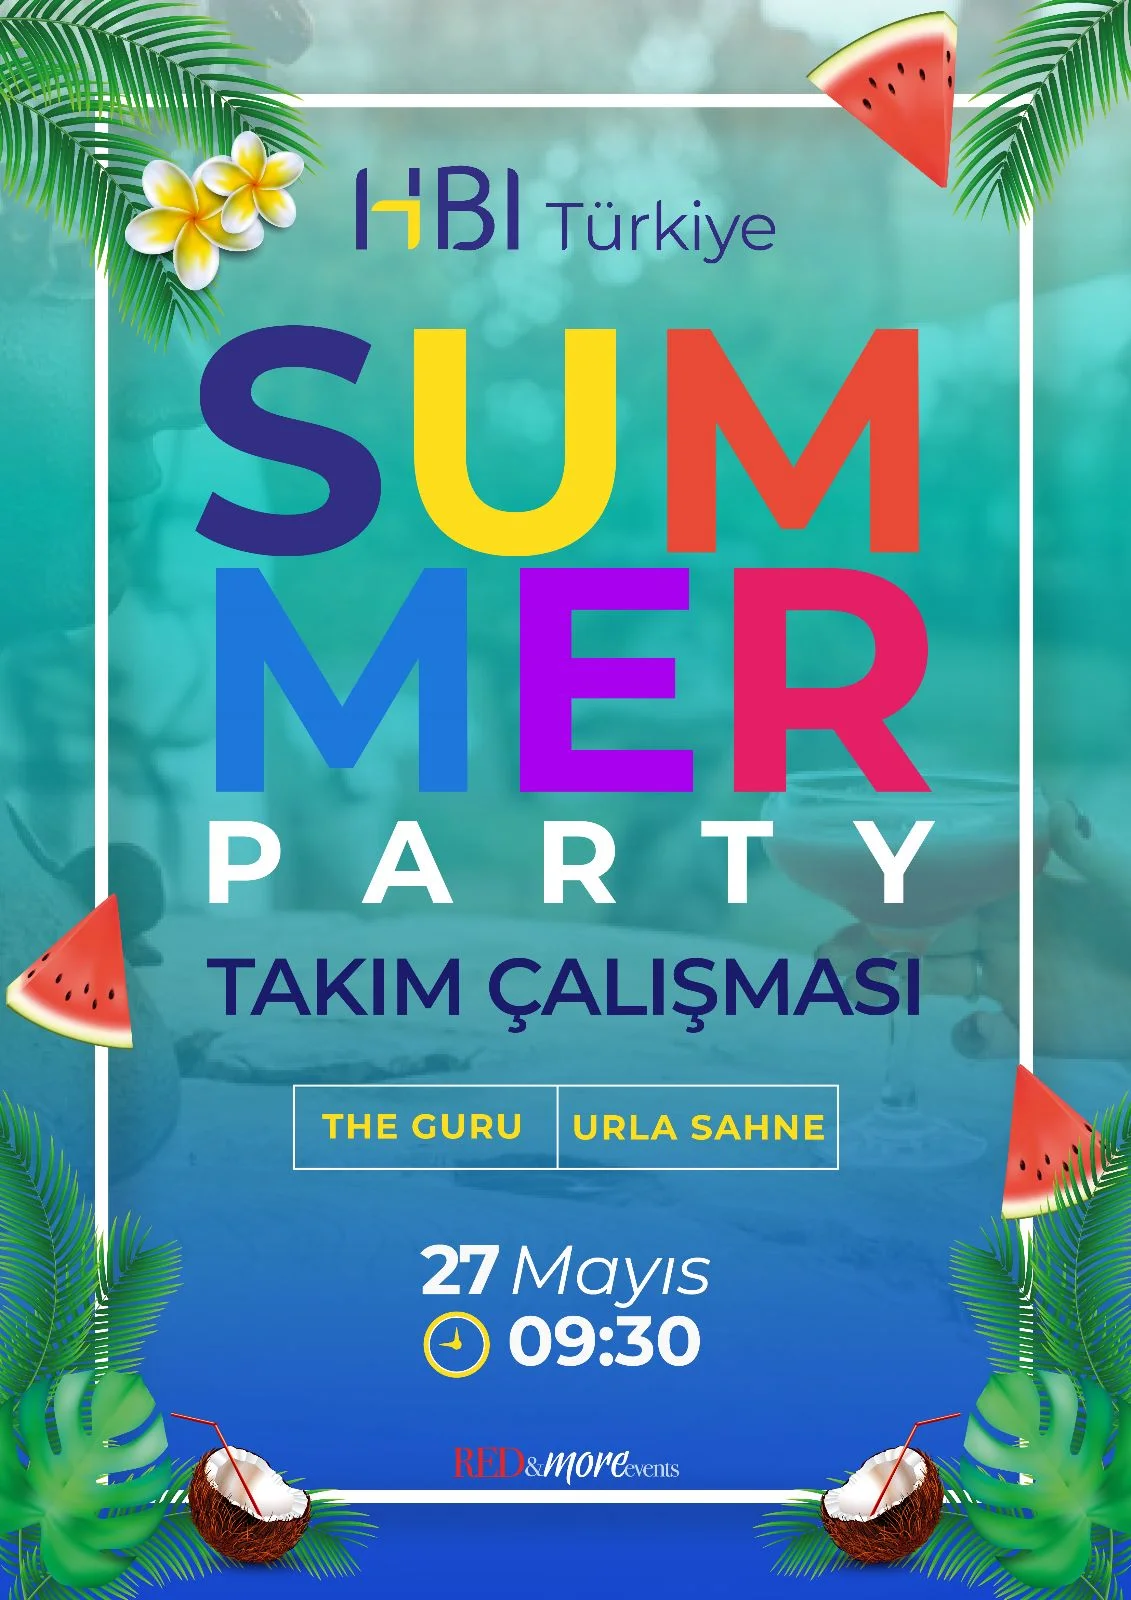 HBI Türkiye Summer Party Takım Çalışması